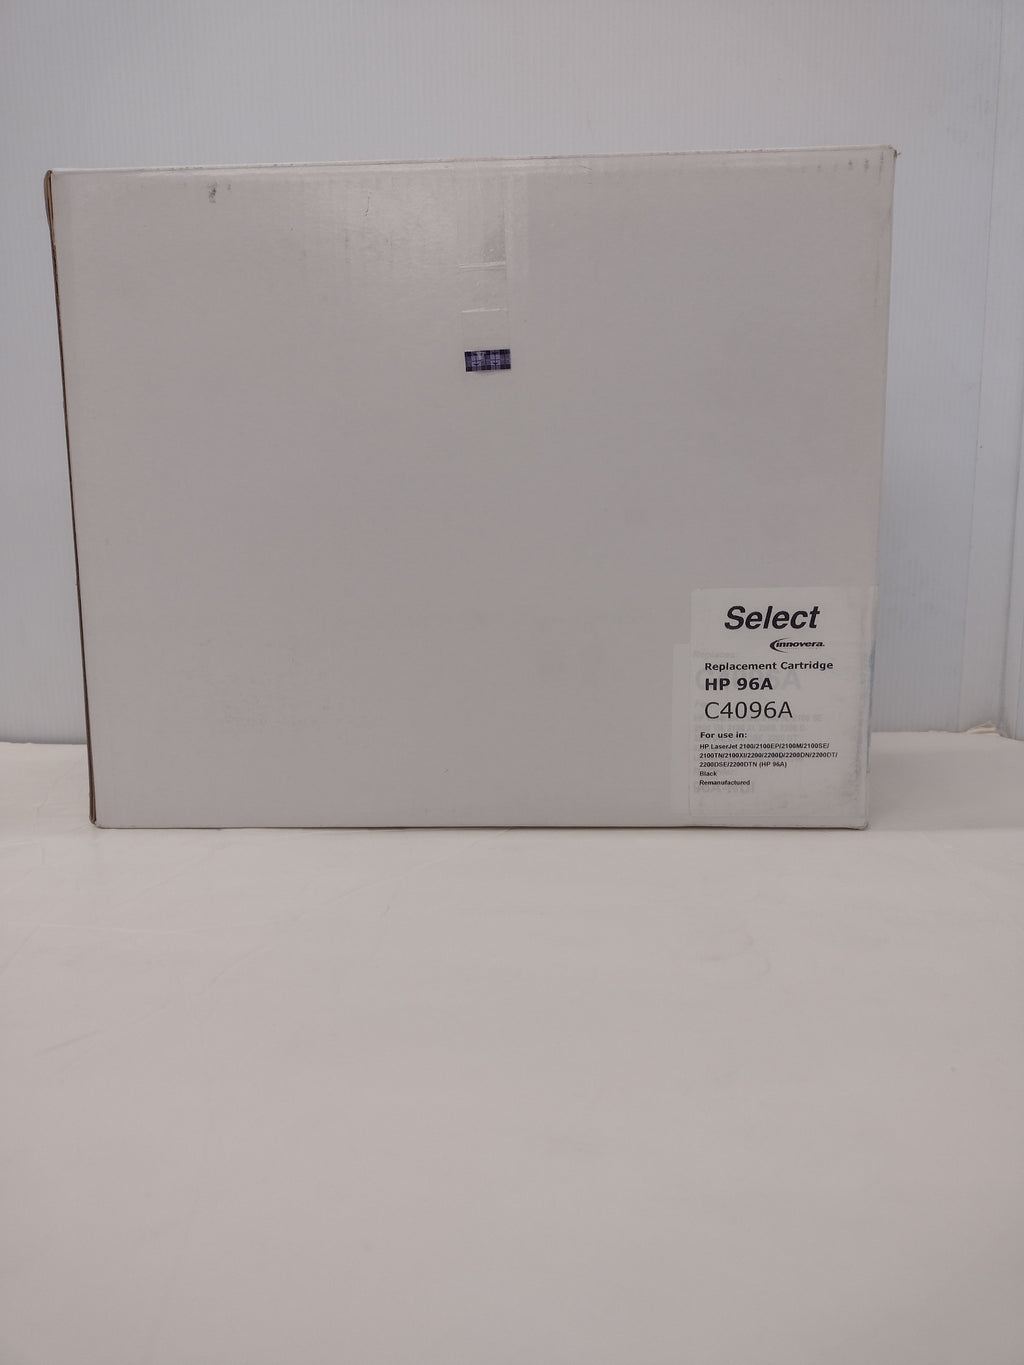 Innovera Select Remanufactured HP 96A LaserJet Toner Cartridge IVR-83096SEL